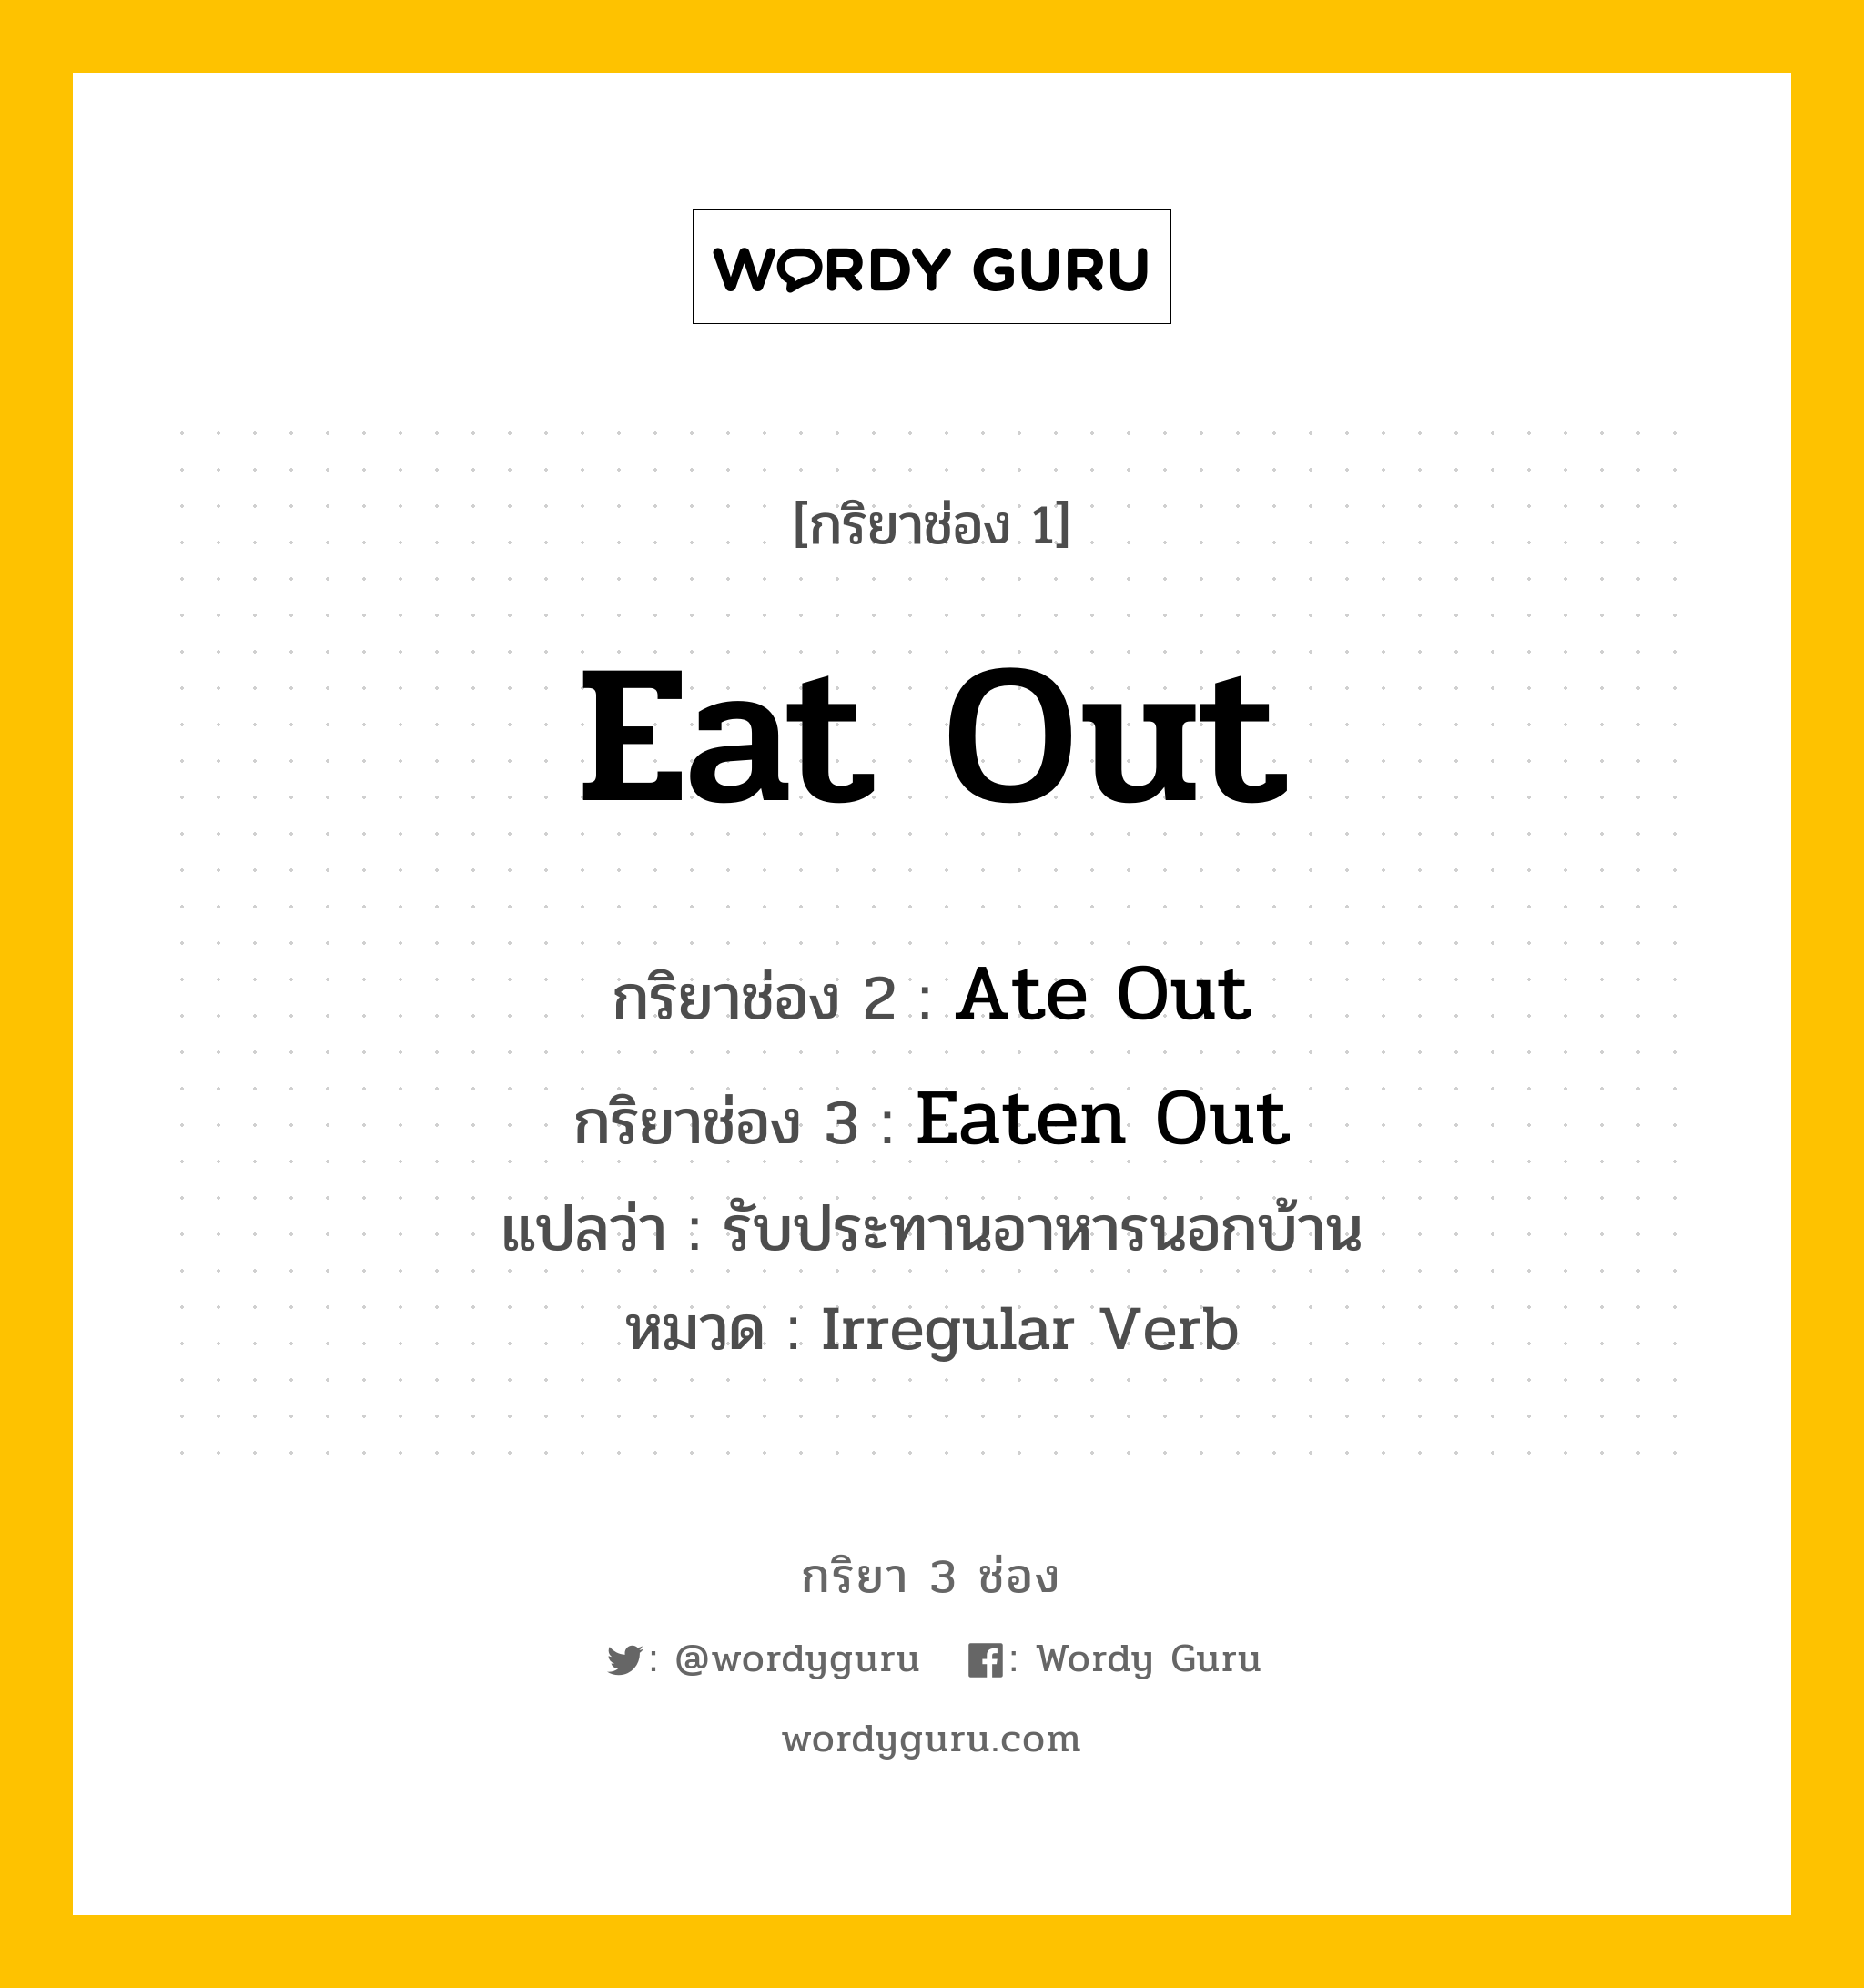 กริยา 3 ช่อง: Eat Out ช่อง 2 Eat Out ช่อง 3 คืออะไร, กริยาช่อง 1 Eat Out กริยาช่อง 2 Ate Out กริยาช่อง 3 Eaten Out แปลว่า รับประทานอาหารนอกบ้าน หมวด Irregular Verb หมวด Irregular Verb